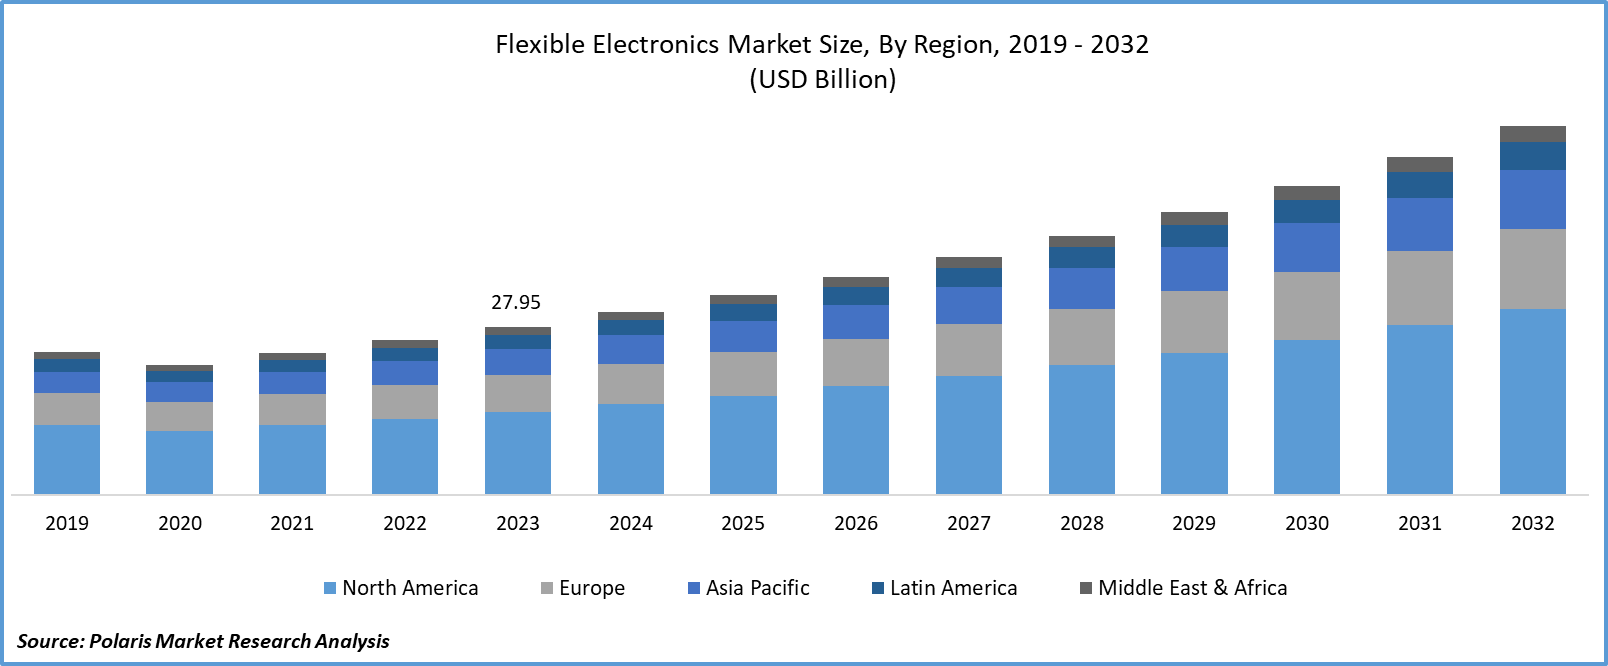 Flexible Electronics Market Size